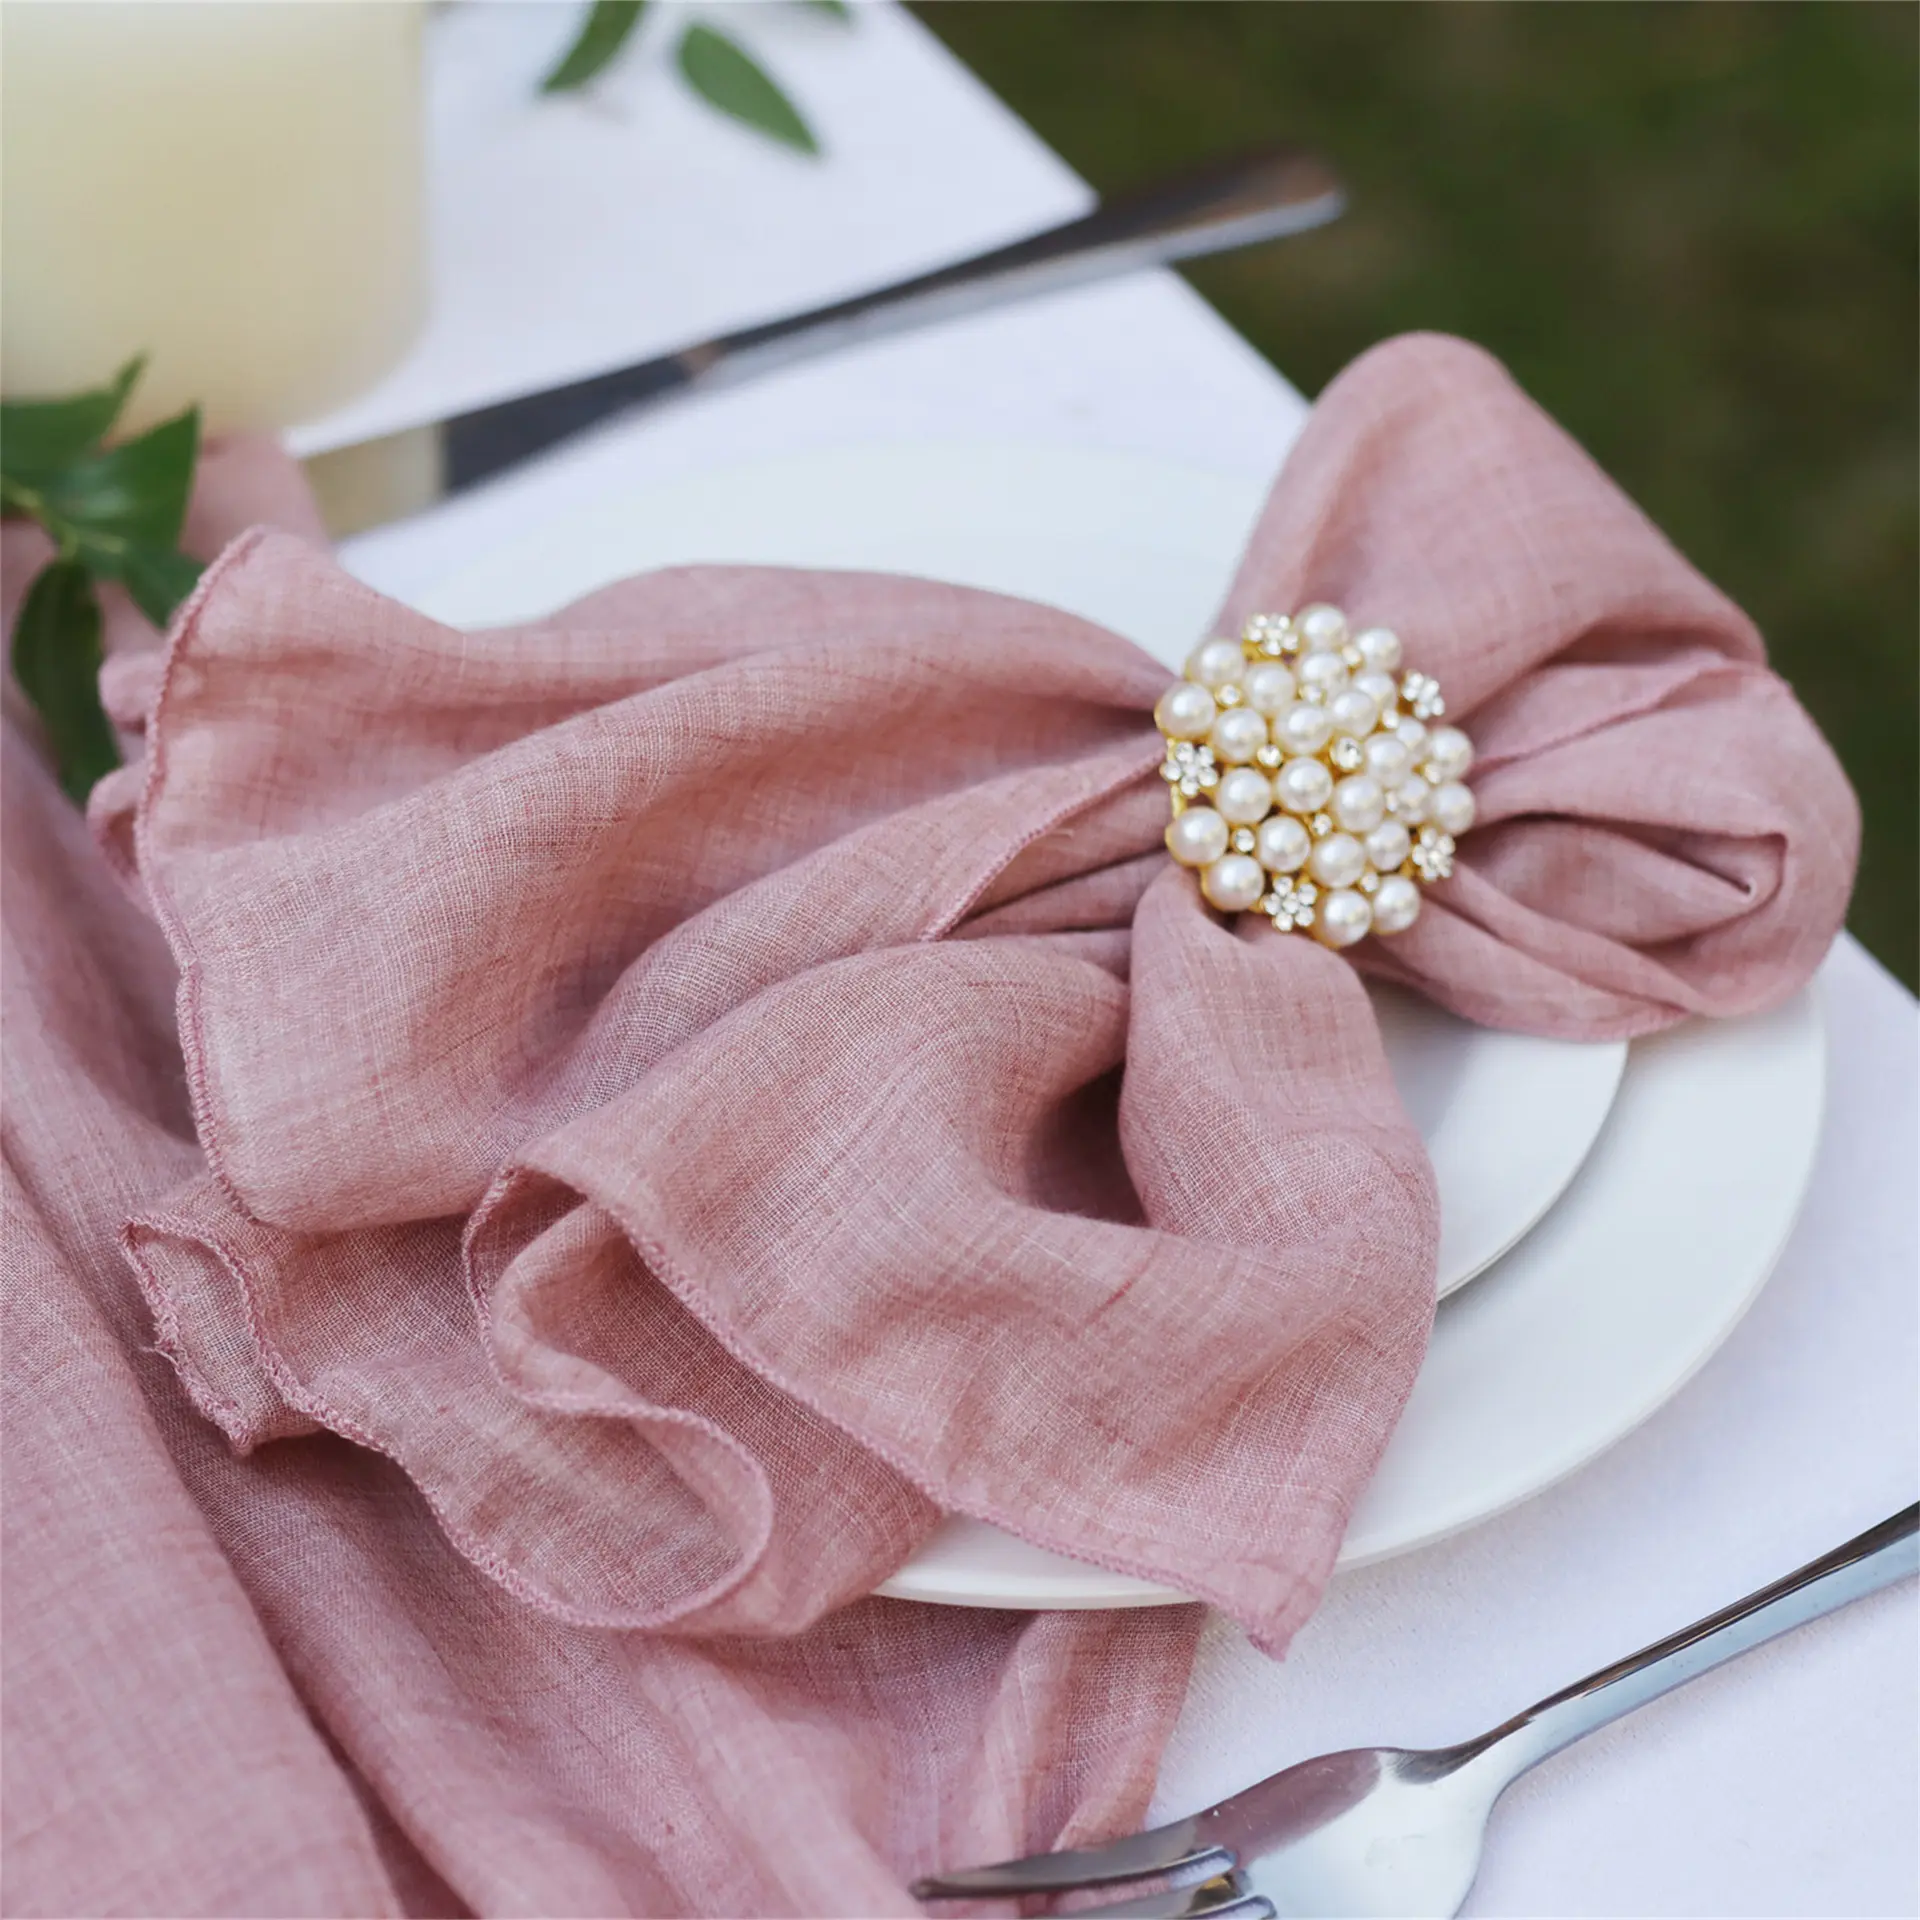 Baumwoll-Tischtuch-Wandwäsche mit Fransen delikate handgemachte Tuch-Wandwäsche für Abendessen Parteien Hochzeiten